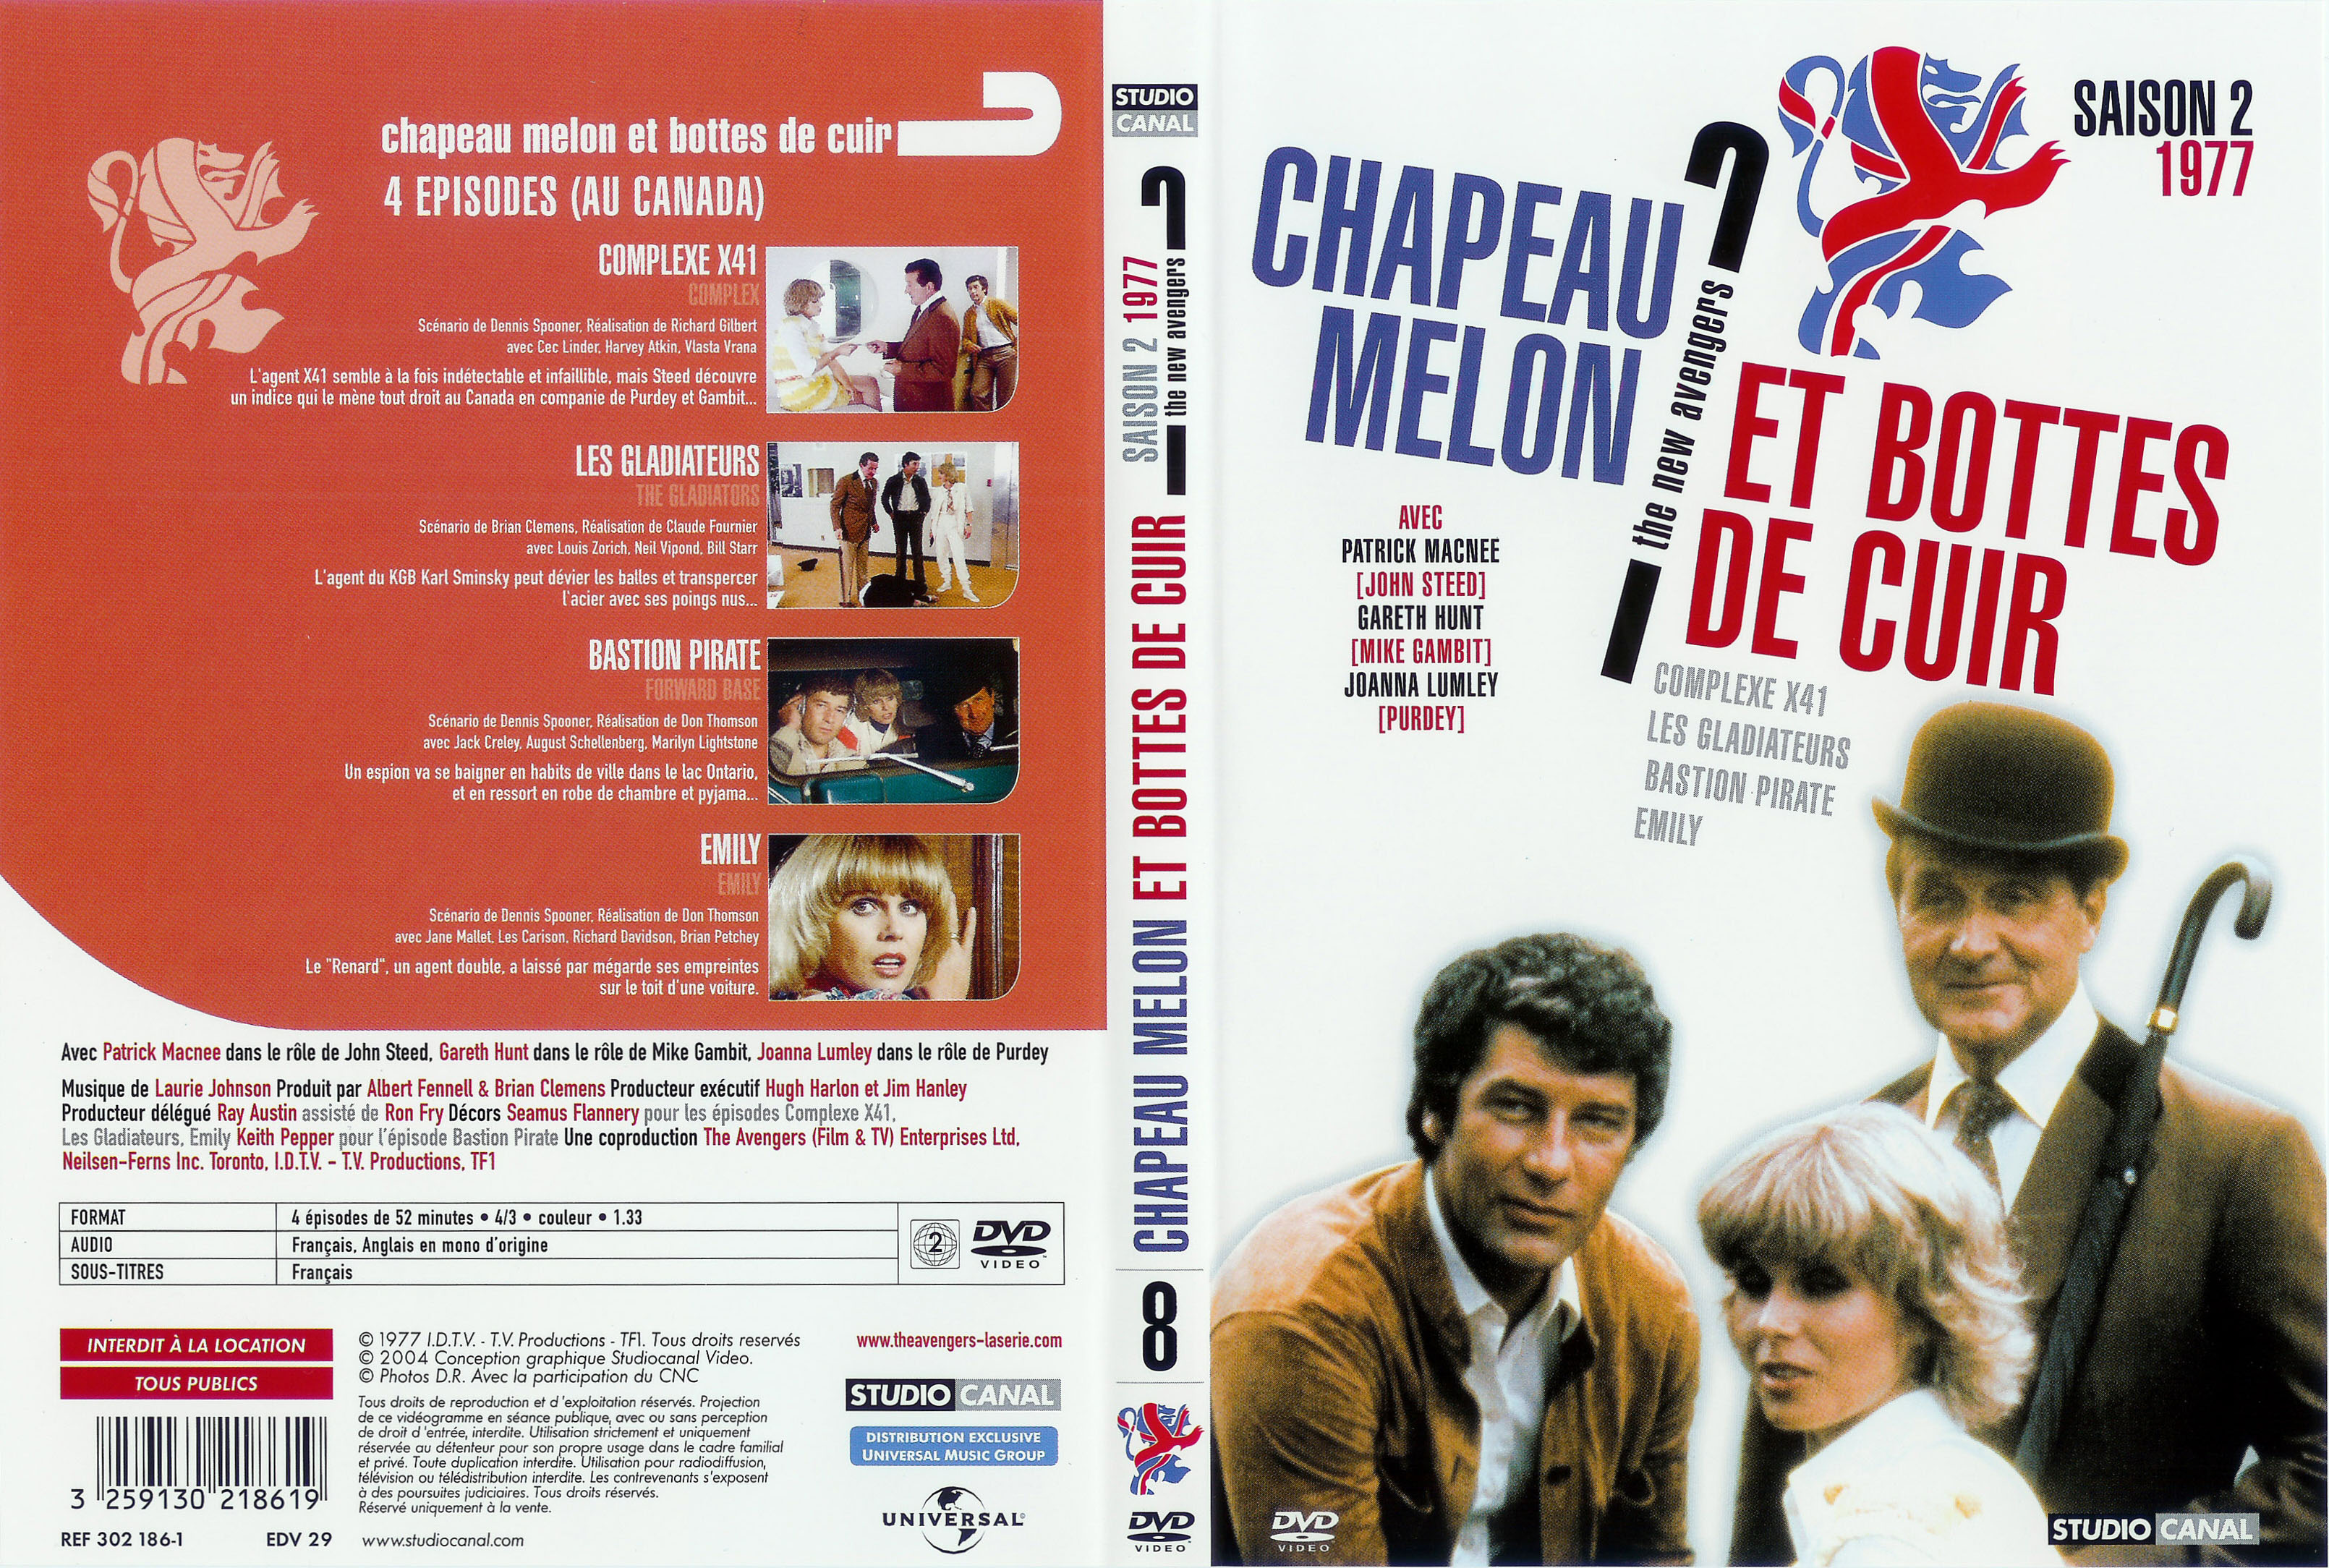 Jaquette DVD Chapeau melon et bottes de cuir 1977 vol 4